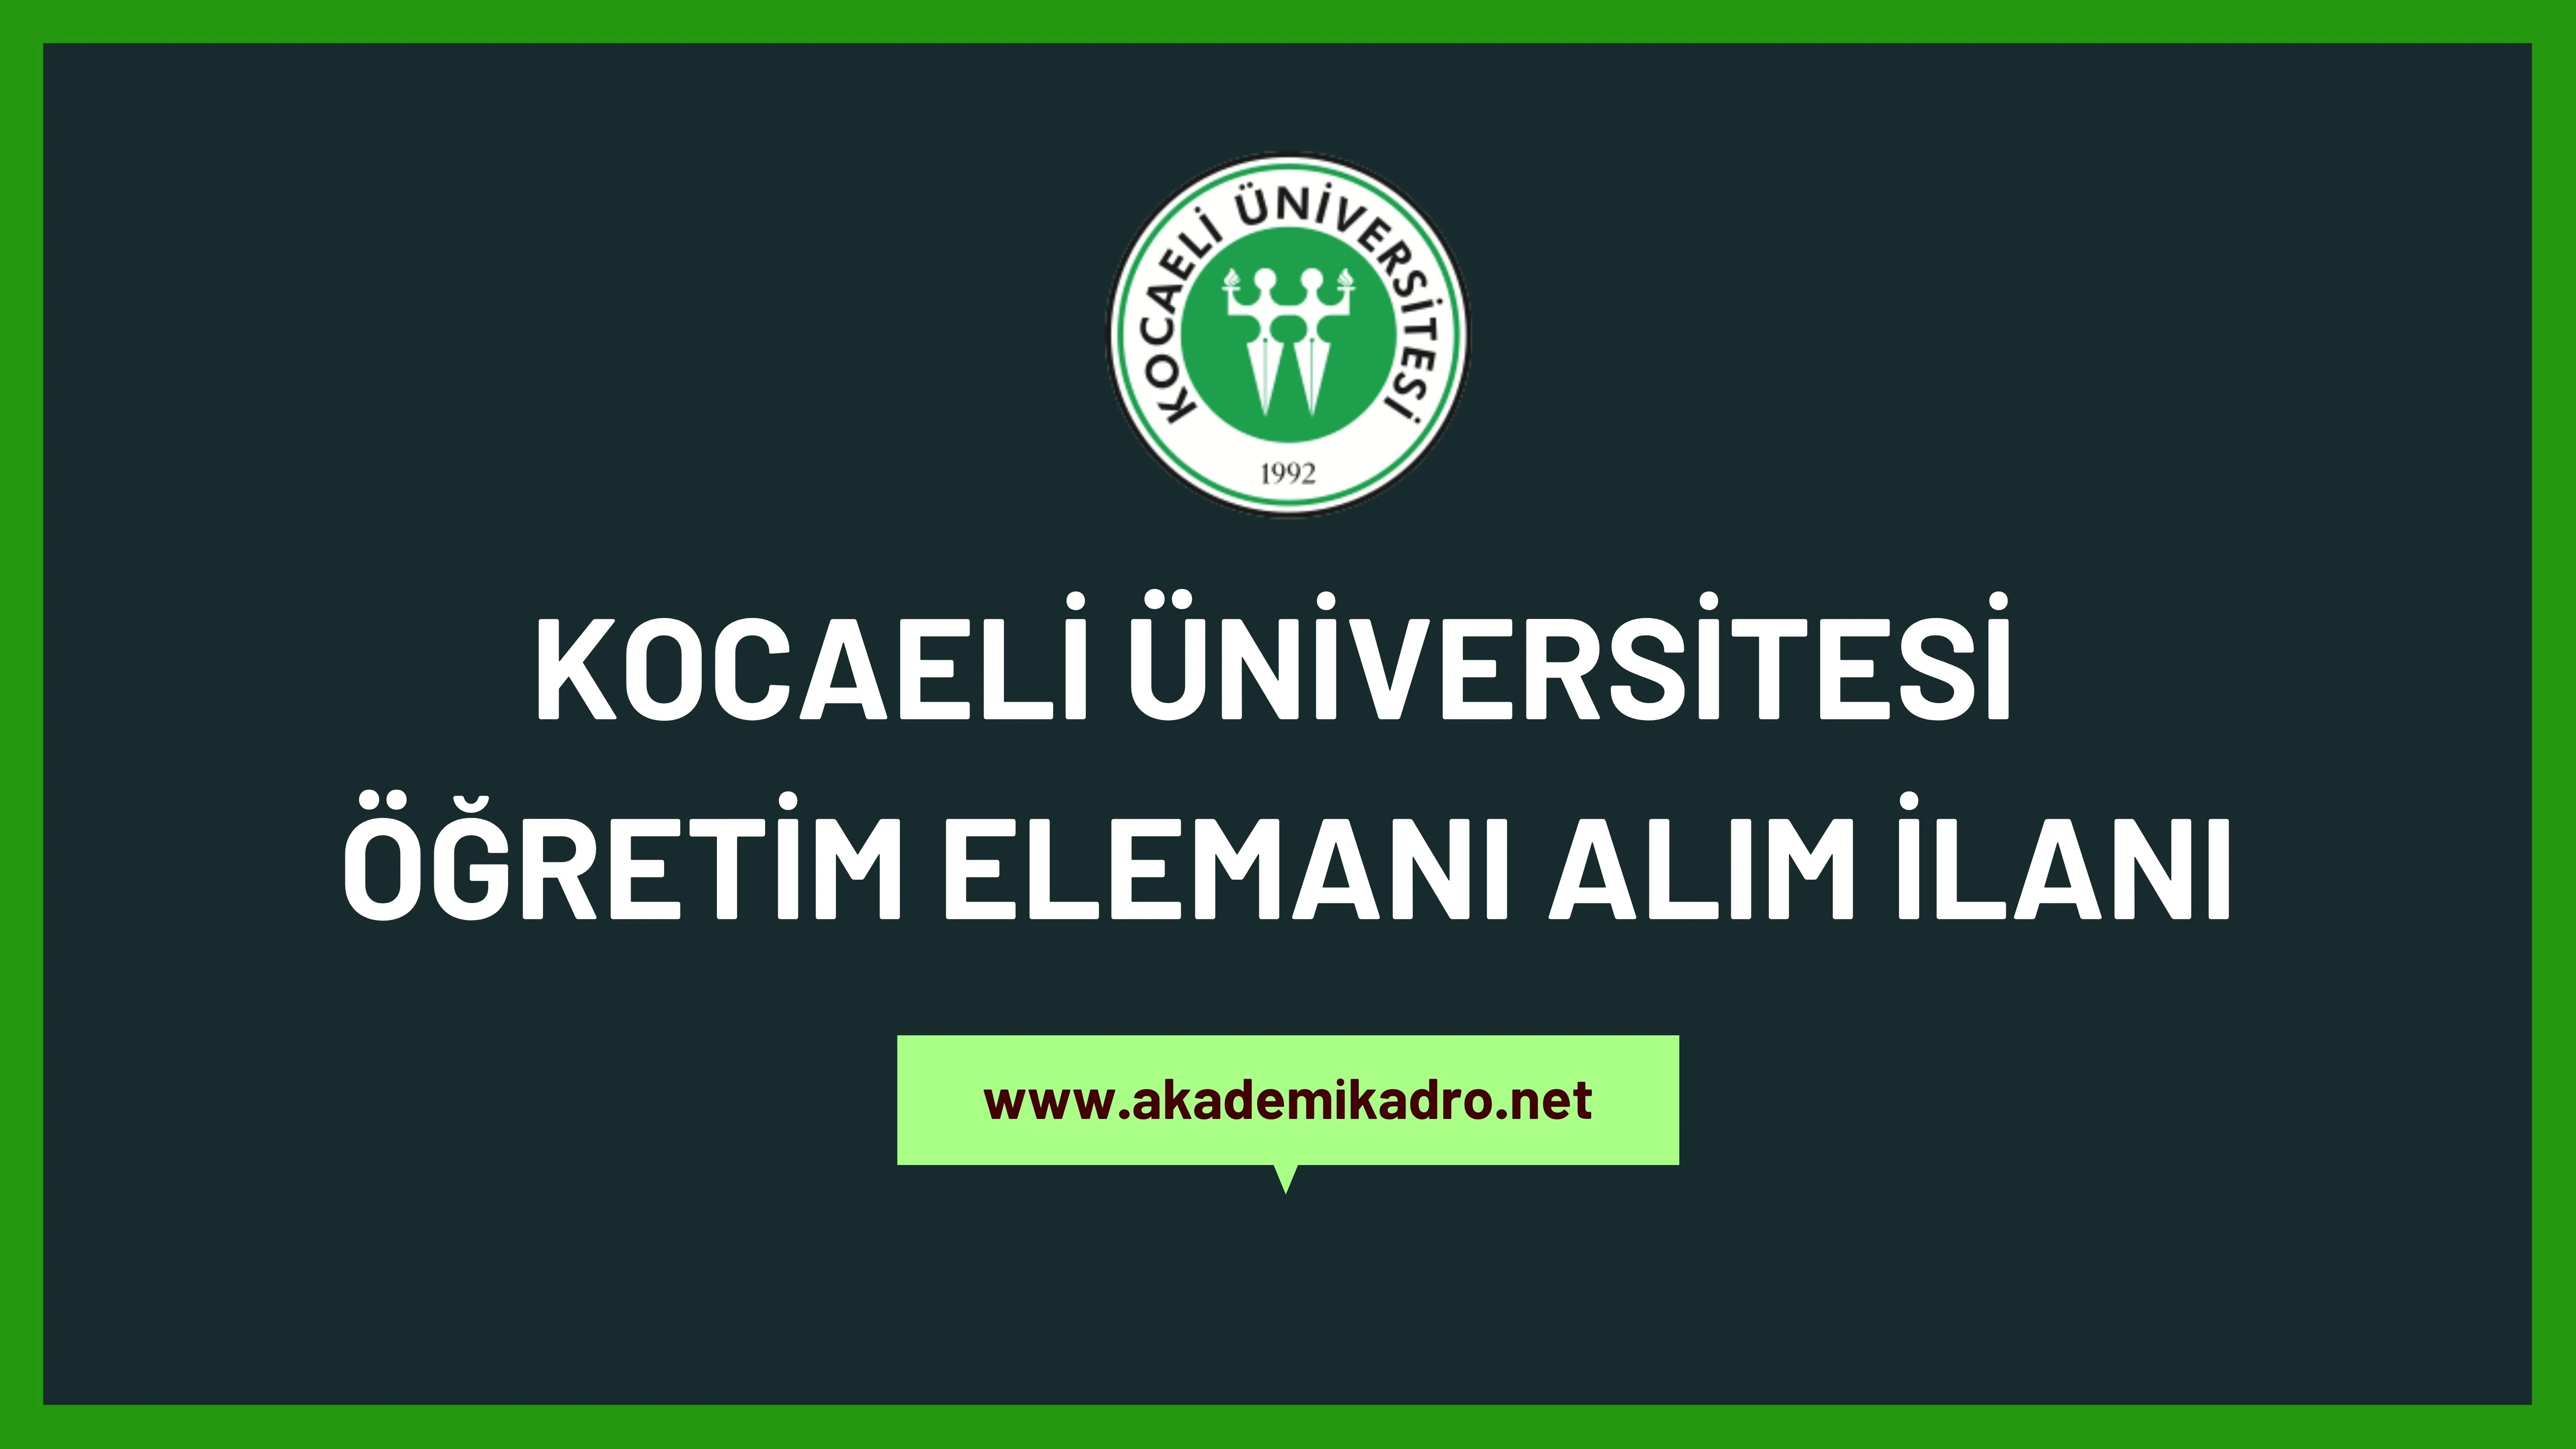 Kocaeli Üniversitesi Öğretim görevlisi ve öğretim üyesi olmak üzere 52 Öğretim elemanı alacak.